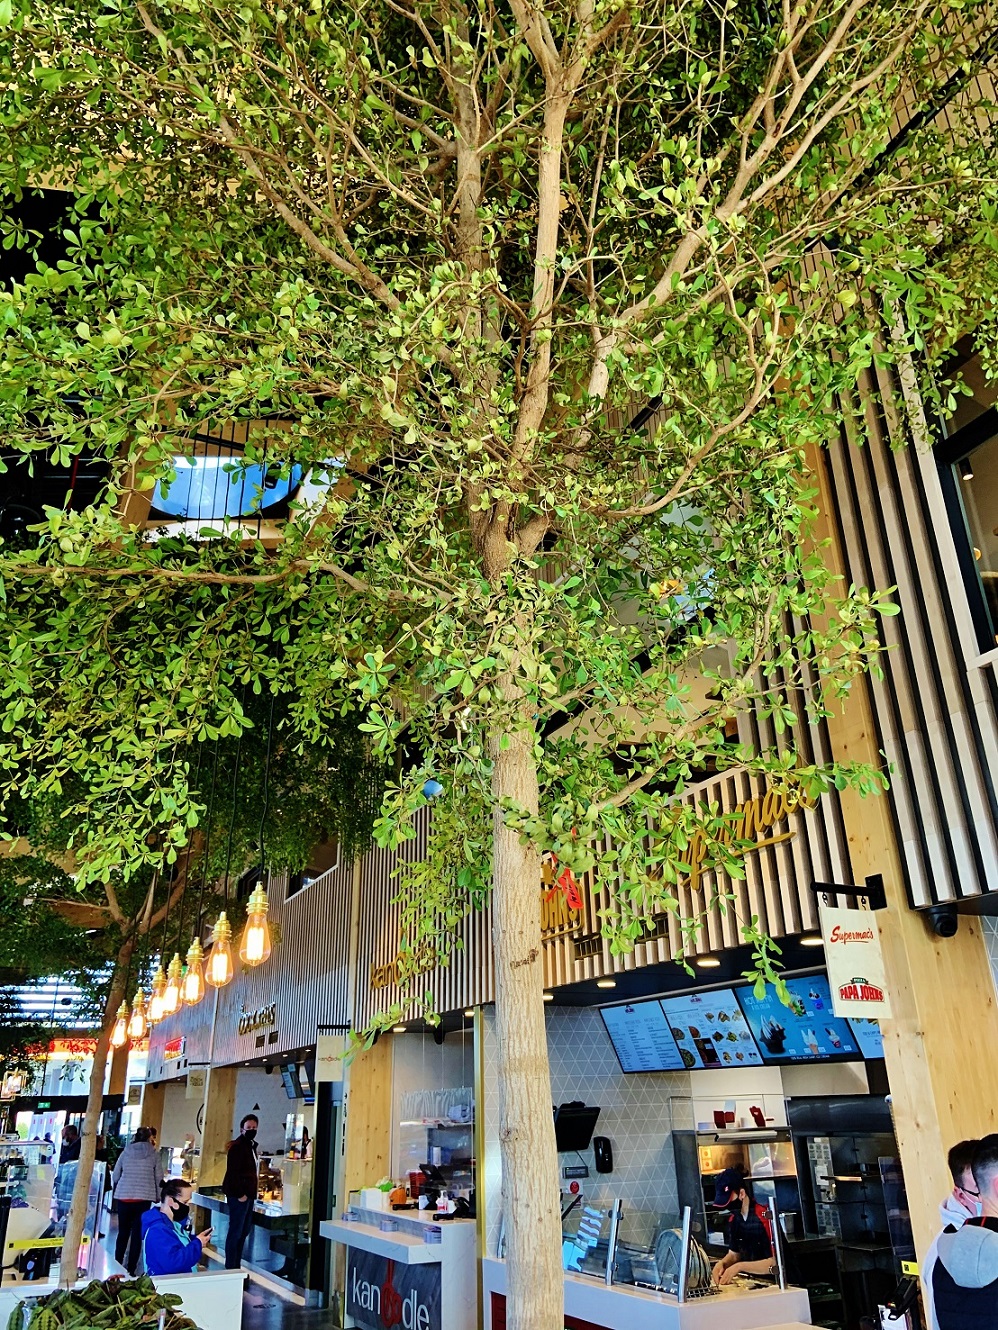 Irland Shopping Center Bucida Baum im Raum